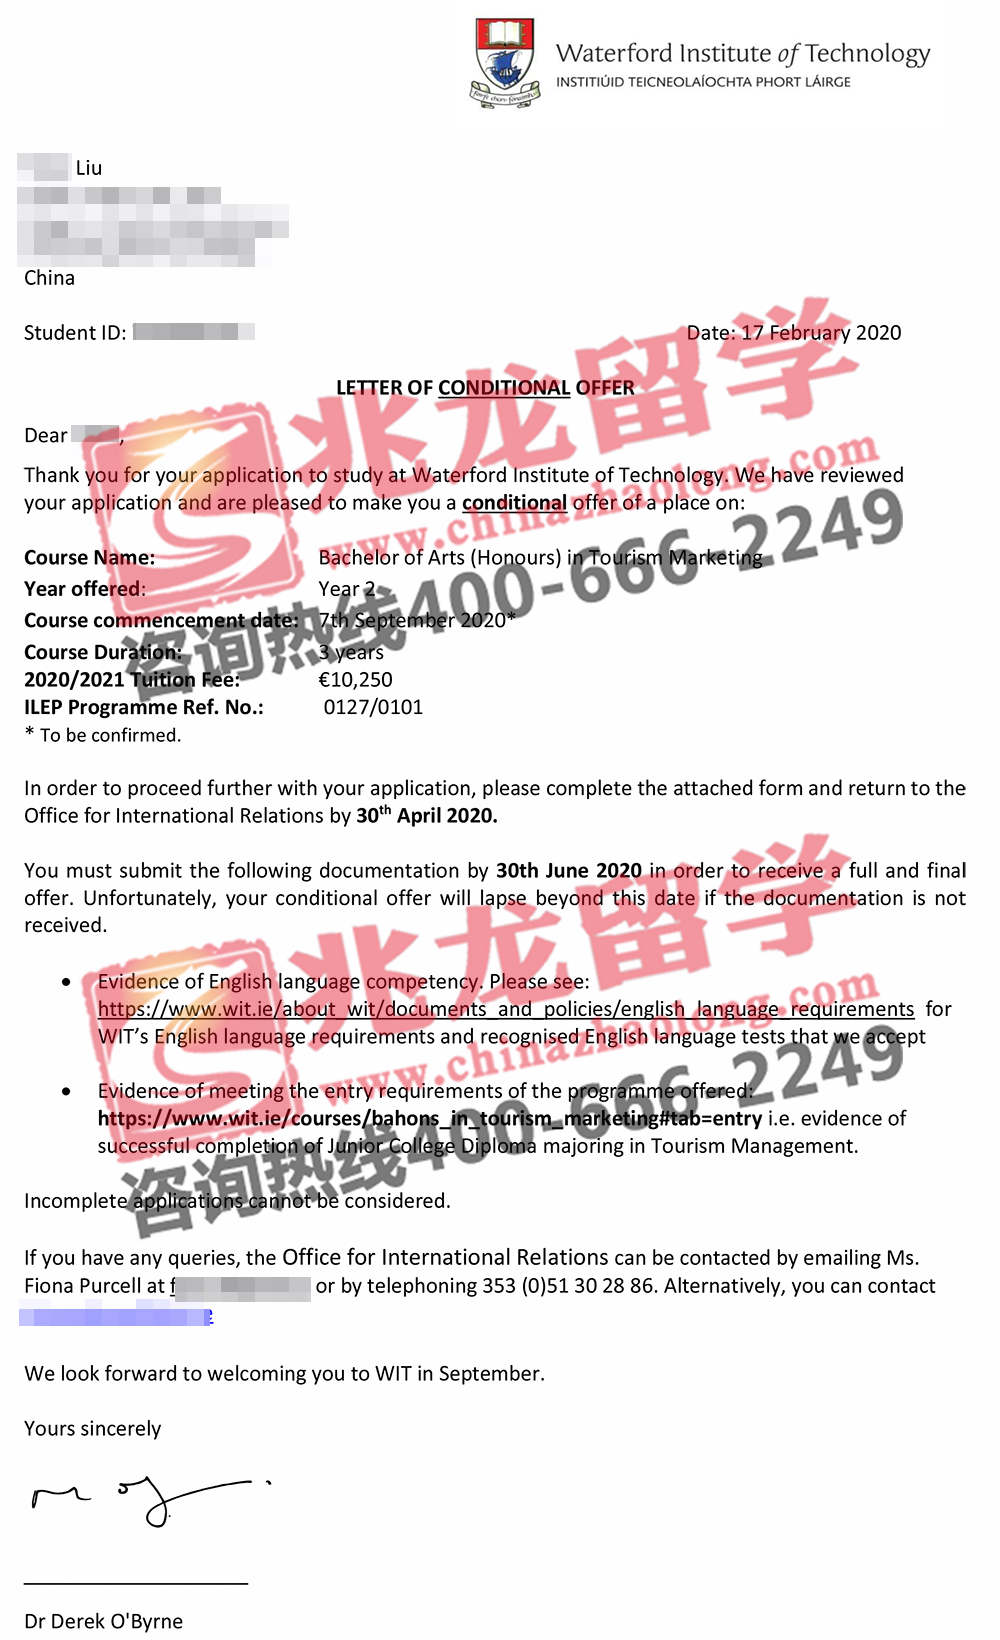 刘yubo-沃特福德理工学院-旅游营销-本科-有条件offer-北京兆龙留学.jpg